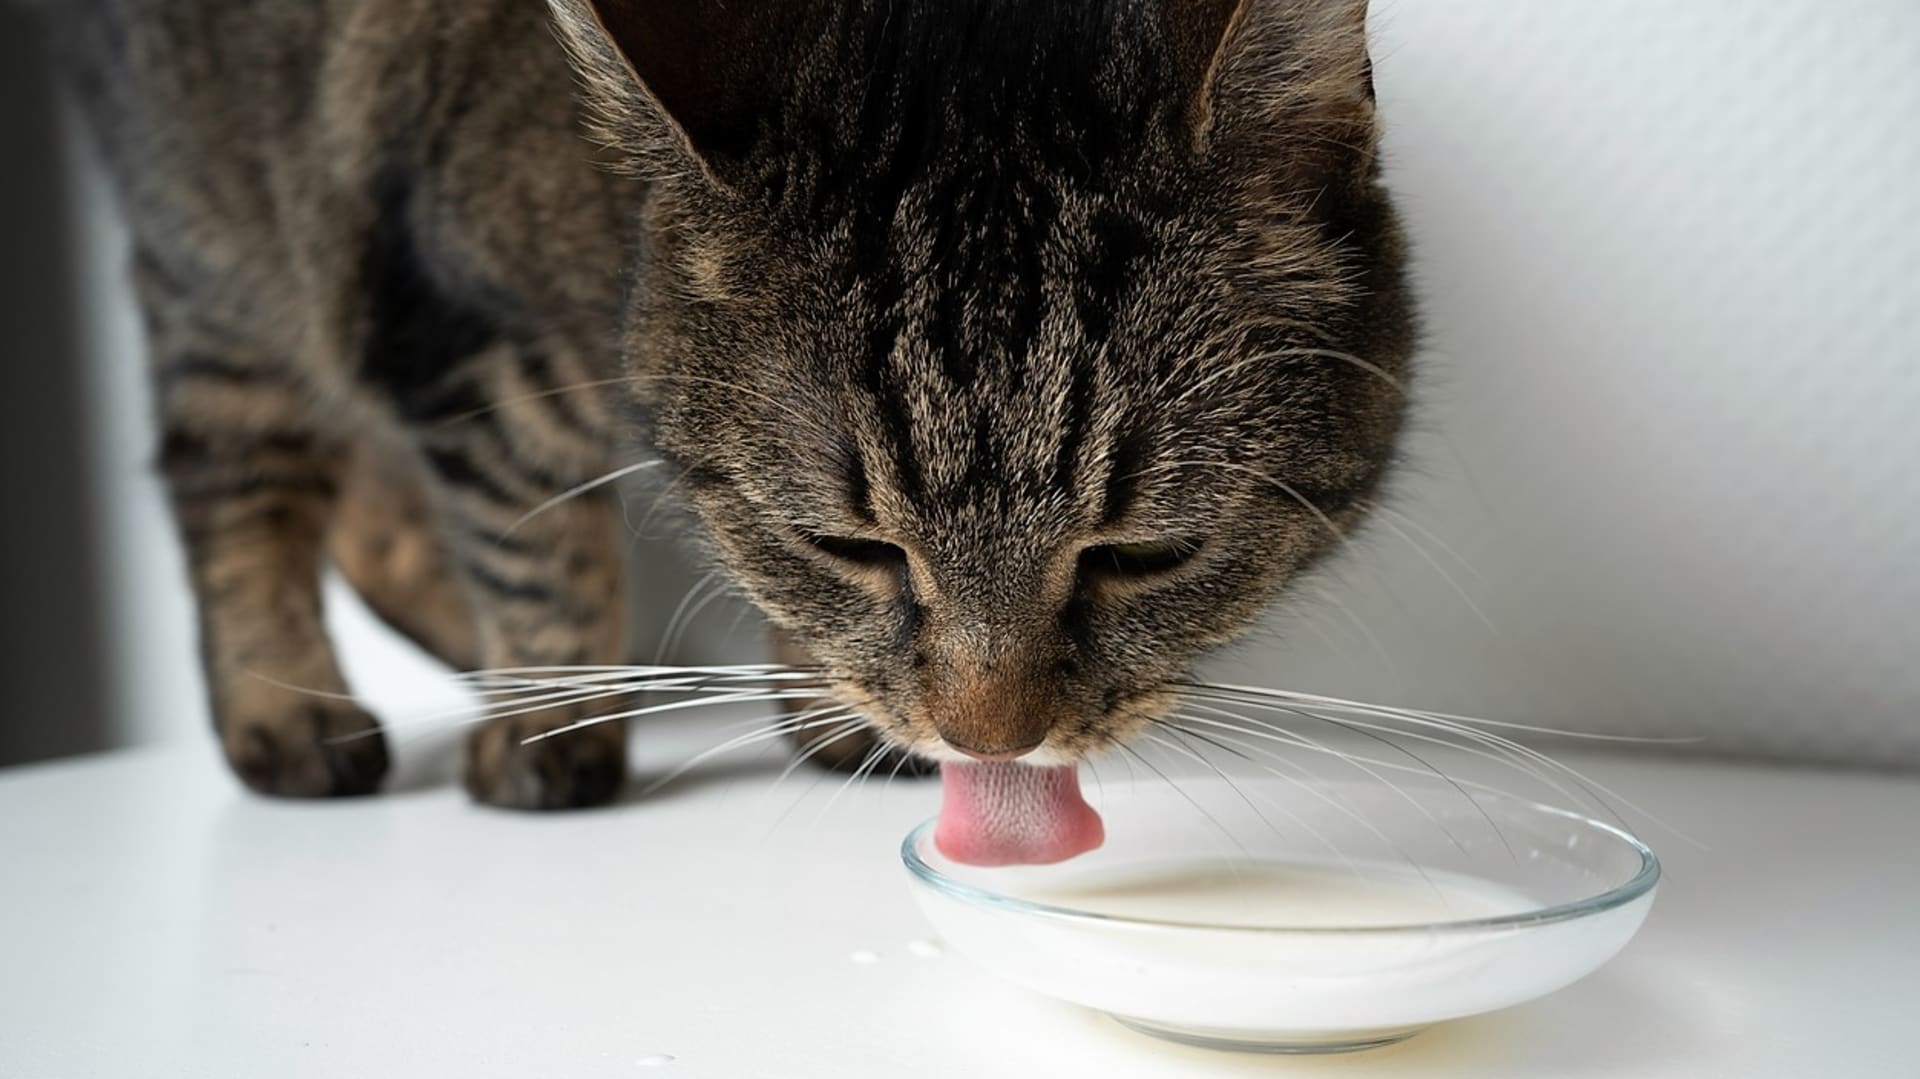 Kočka a mléko: Pokud chceme dopřát kočce mléko, měli bychom volit speciální mléko určené pro kočky, které se vyznačuje nízkou mírou laktózy a více odpovídá mateřskému kočičímu mléku. 